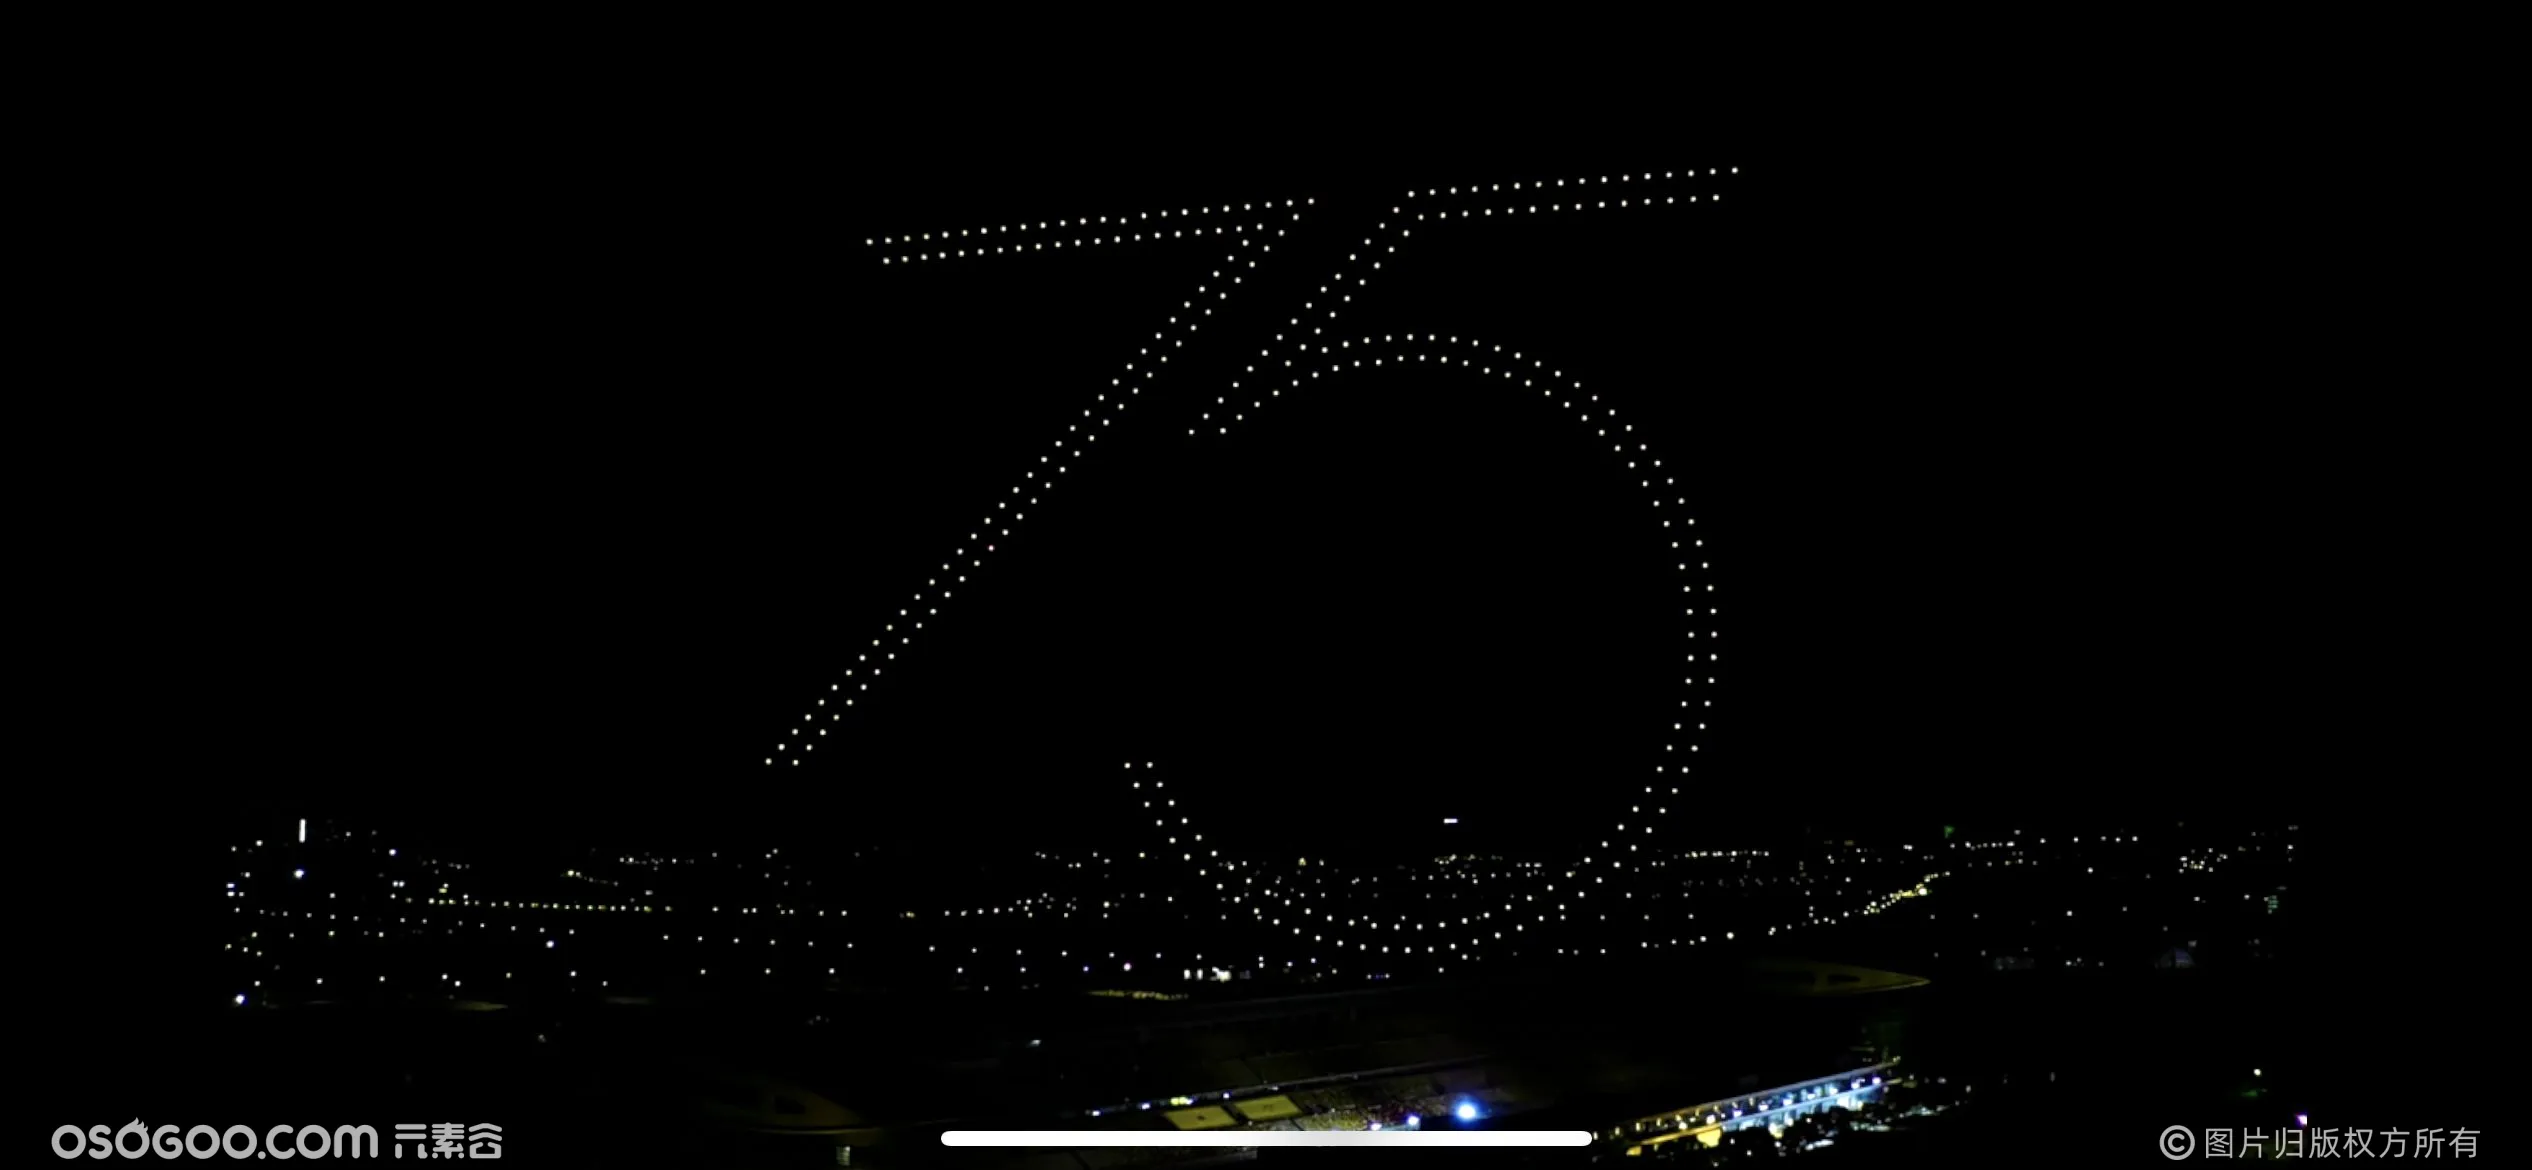  上海路特斯品牌75周年庆无人机灯光秀表演